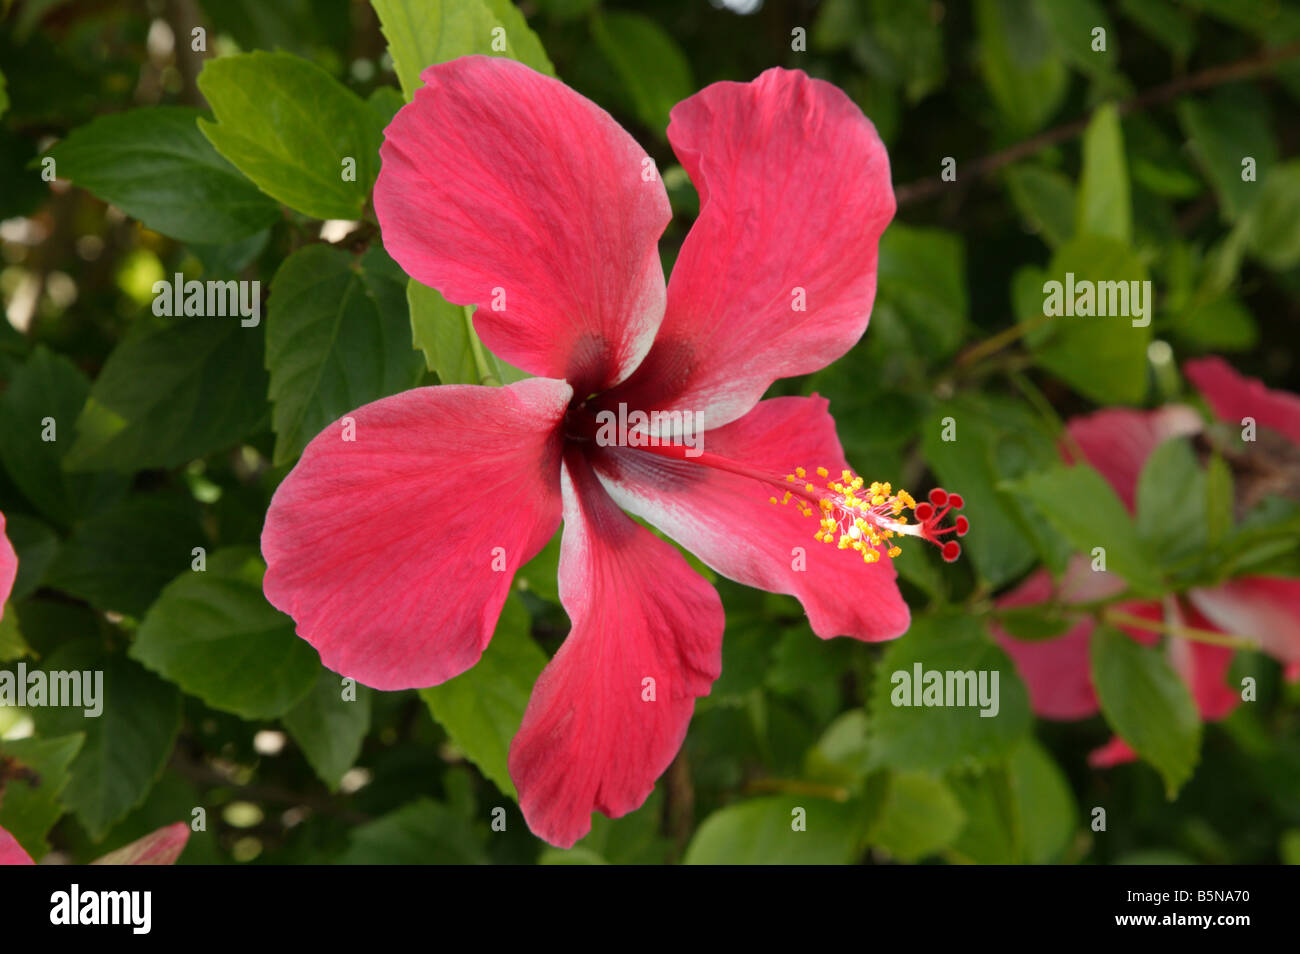 Gros plan sur une fleur d'Hibiscus rosa-sinensis, Hibiscus, rose de Chine, Hibiscus fleurs Chaussures [chinois] Banque D'Images